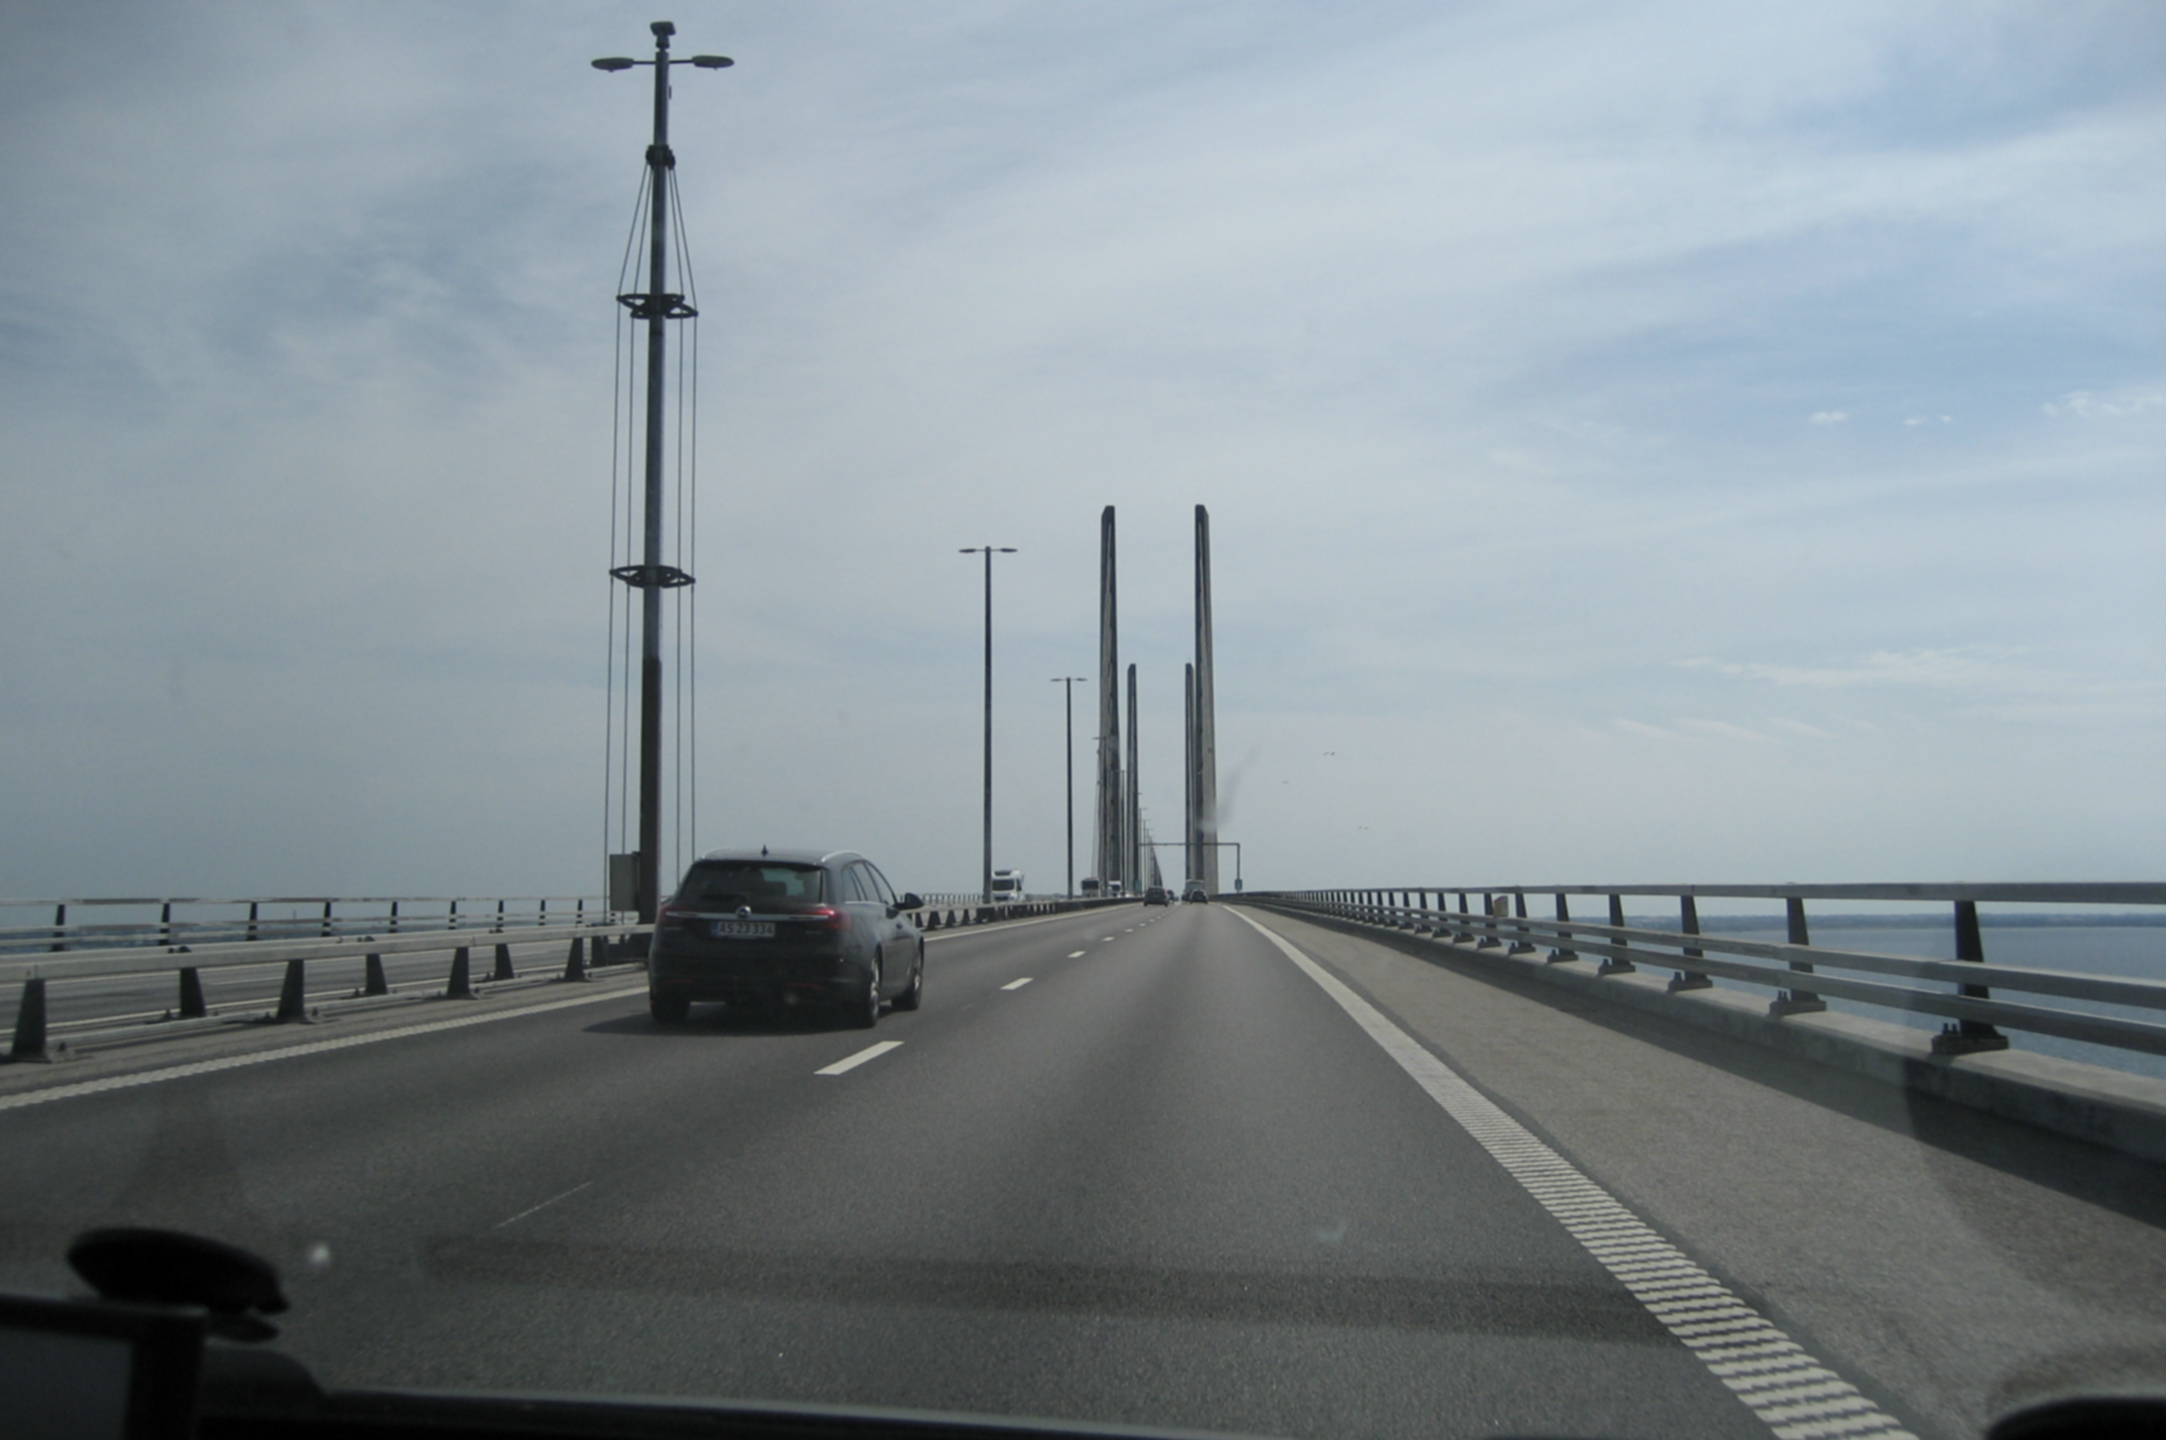 IMG_3577.jpg - Videre til Øresundsbroen. På vej derover lød det i radioen at der var problemer med betalingsanlæget, så der var store forsinkelser.